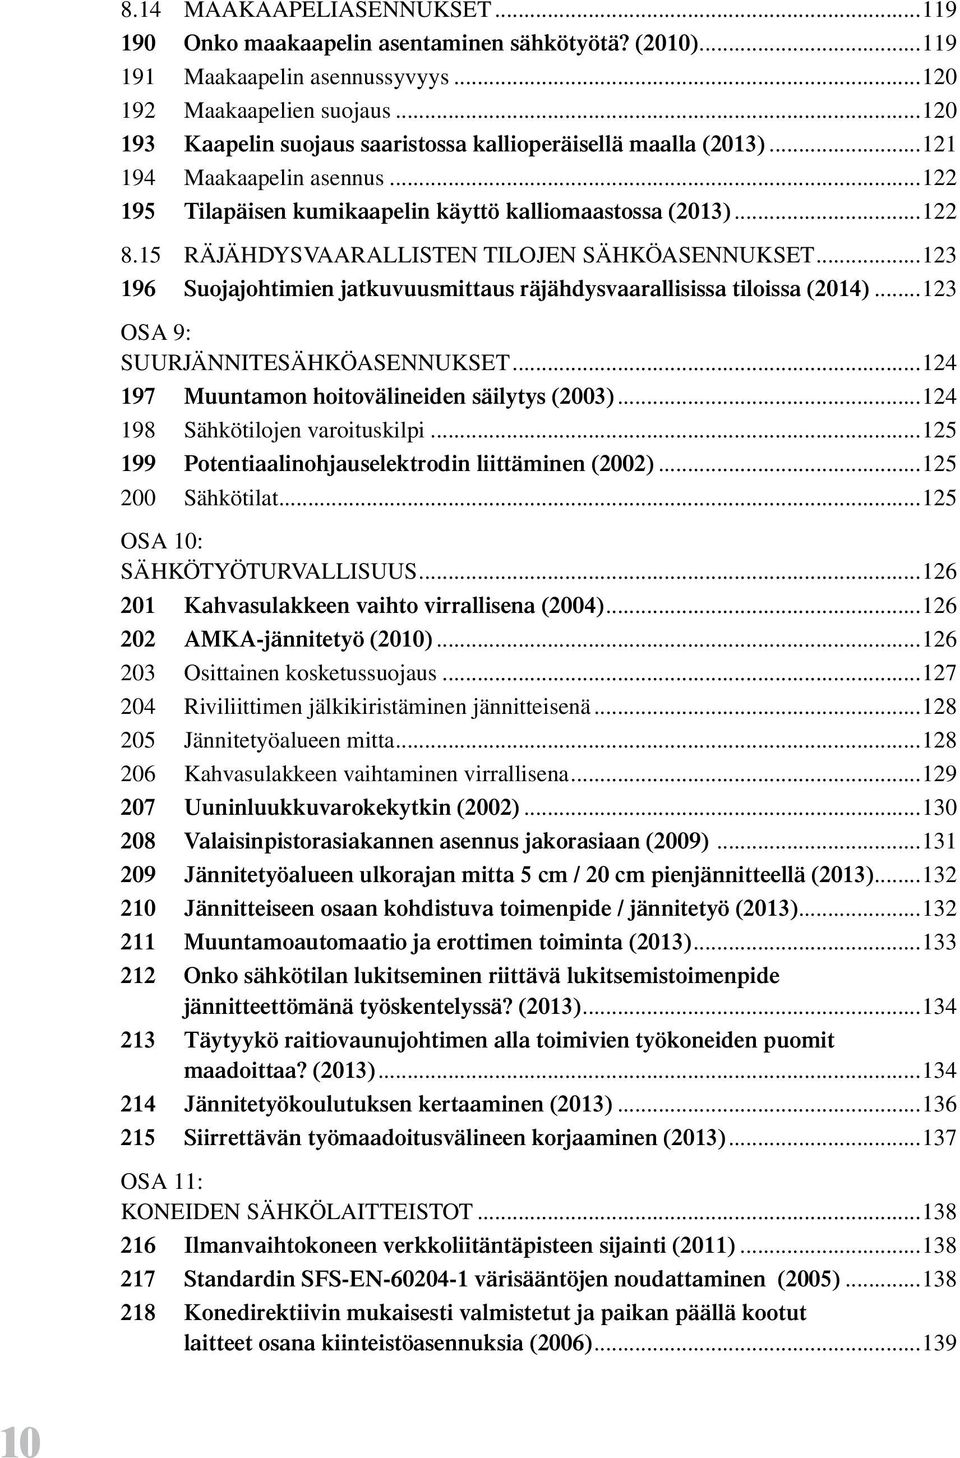 15 RÄJÄHDYSVAARALLISTEN TILOJEN SÄHKÖASENNUKSET...123 196 Suojajohtimien jatkuvuusmittaus räjähdysvaarallisissa tiloissa (2014)...123 OSA 9: SUURJÄNNITESÄHKÖASENNUKSET.